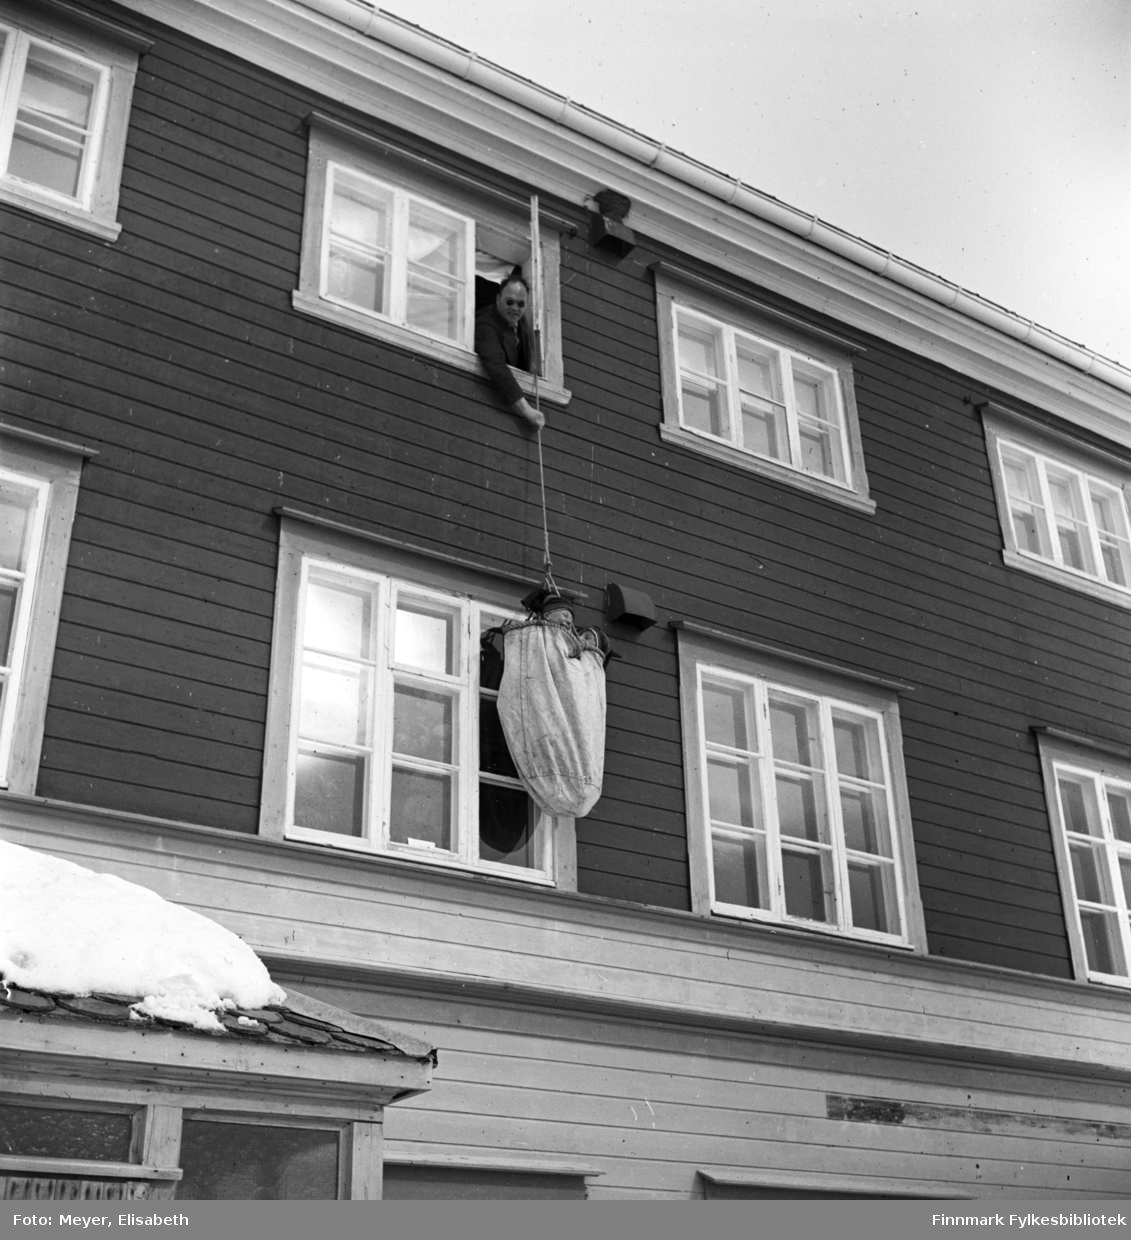 Brannøvelse på Kautokeino skoleinternat. Johan Nils Peder Johansen Sara og Johan Mikkelsen Sara henger på veggen oppi sekken festet til branntauet og blir firt ned 3 etasjer av en lærer med solbriller.